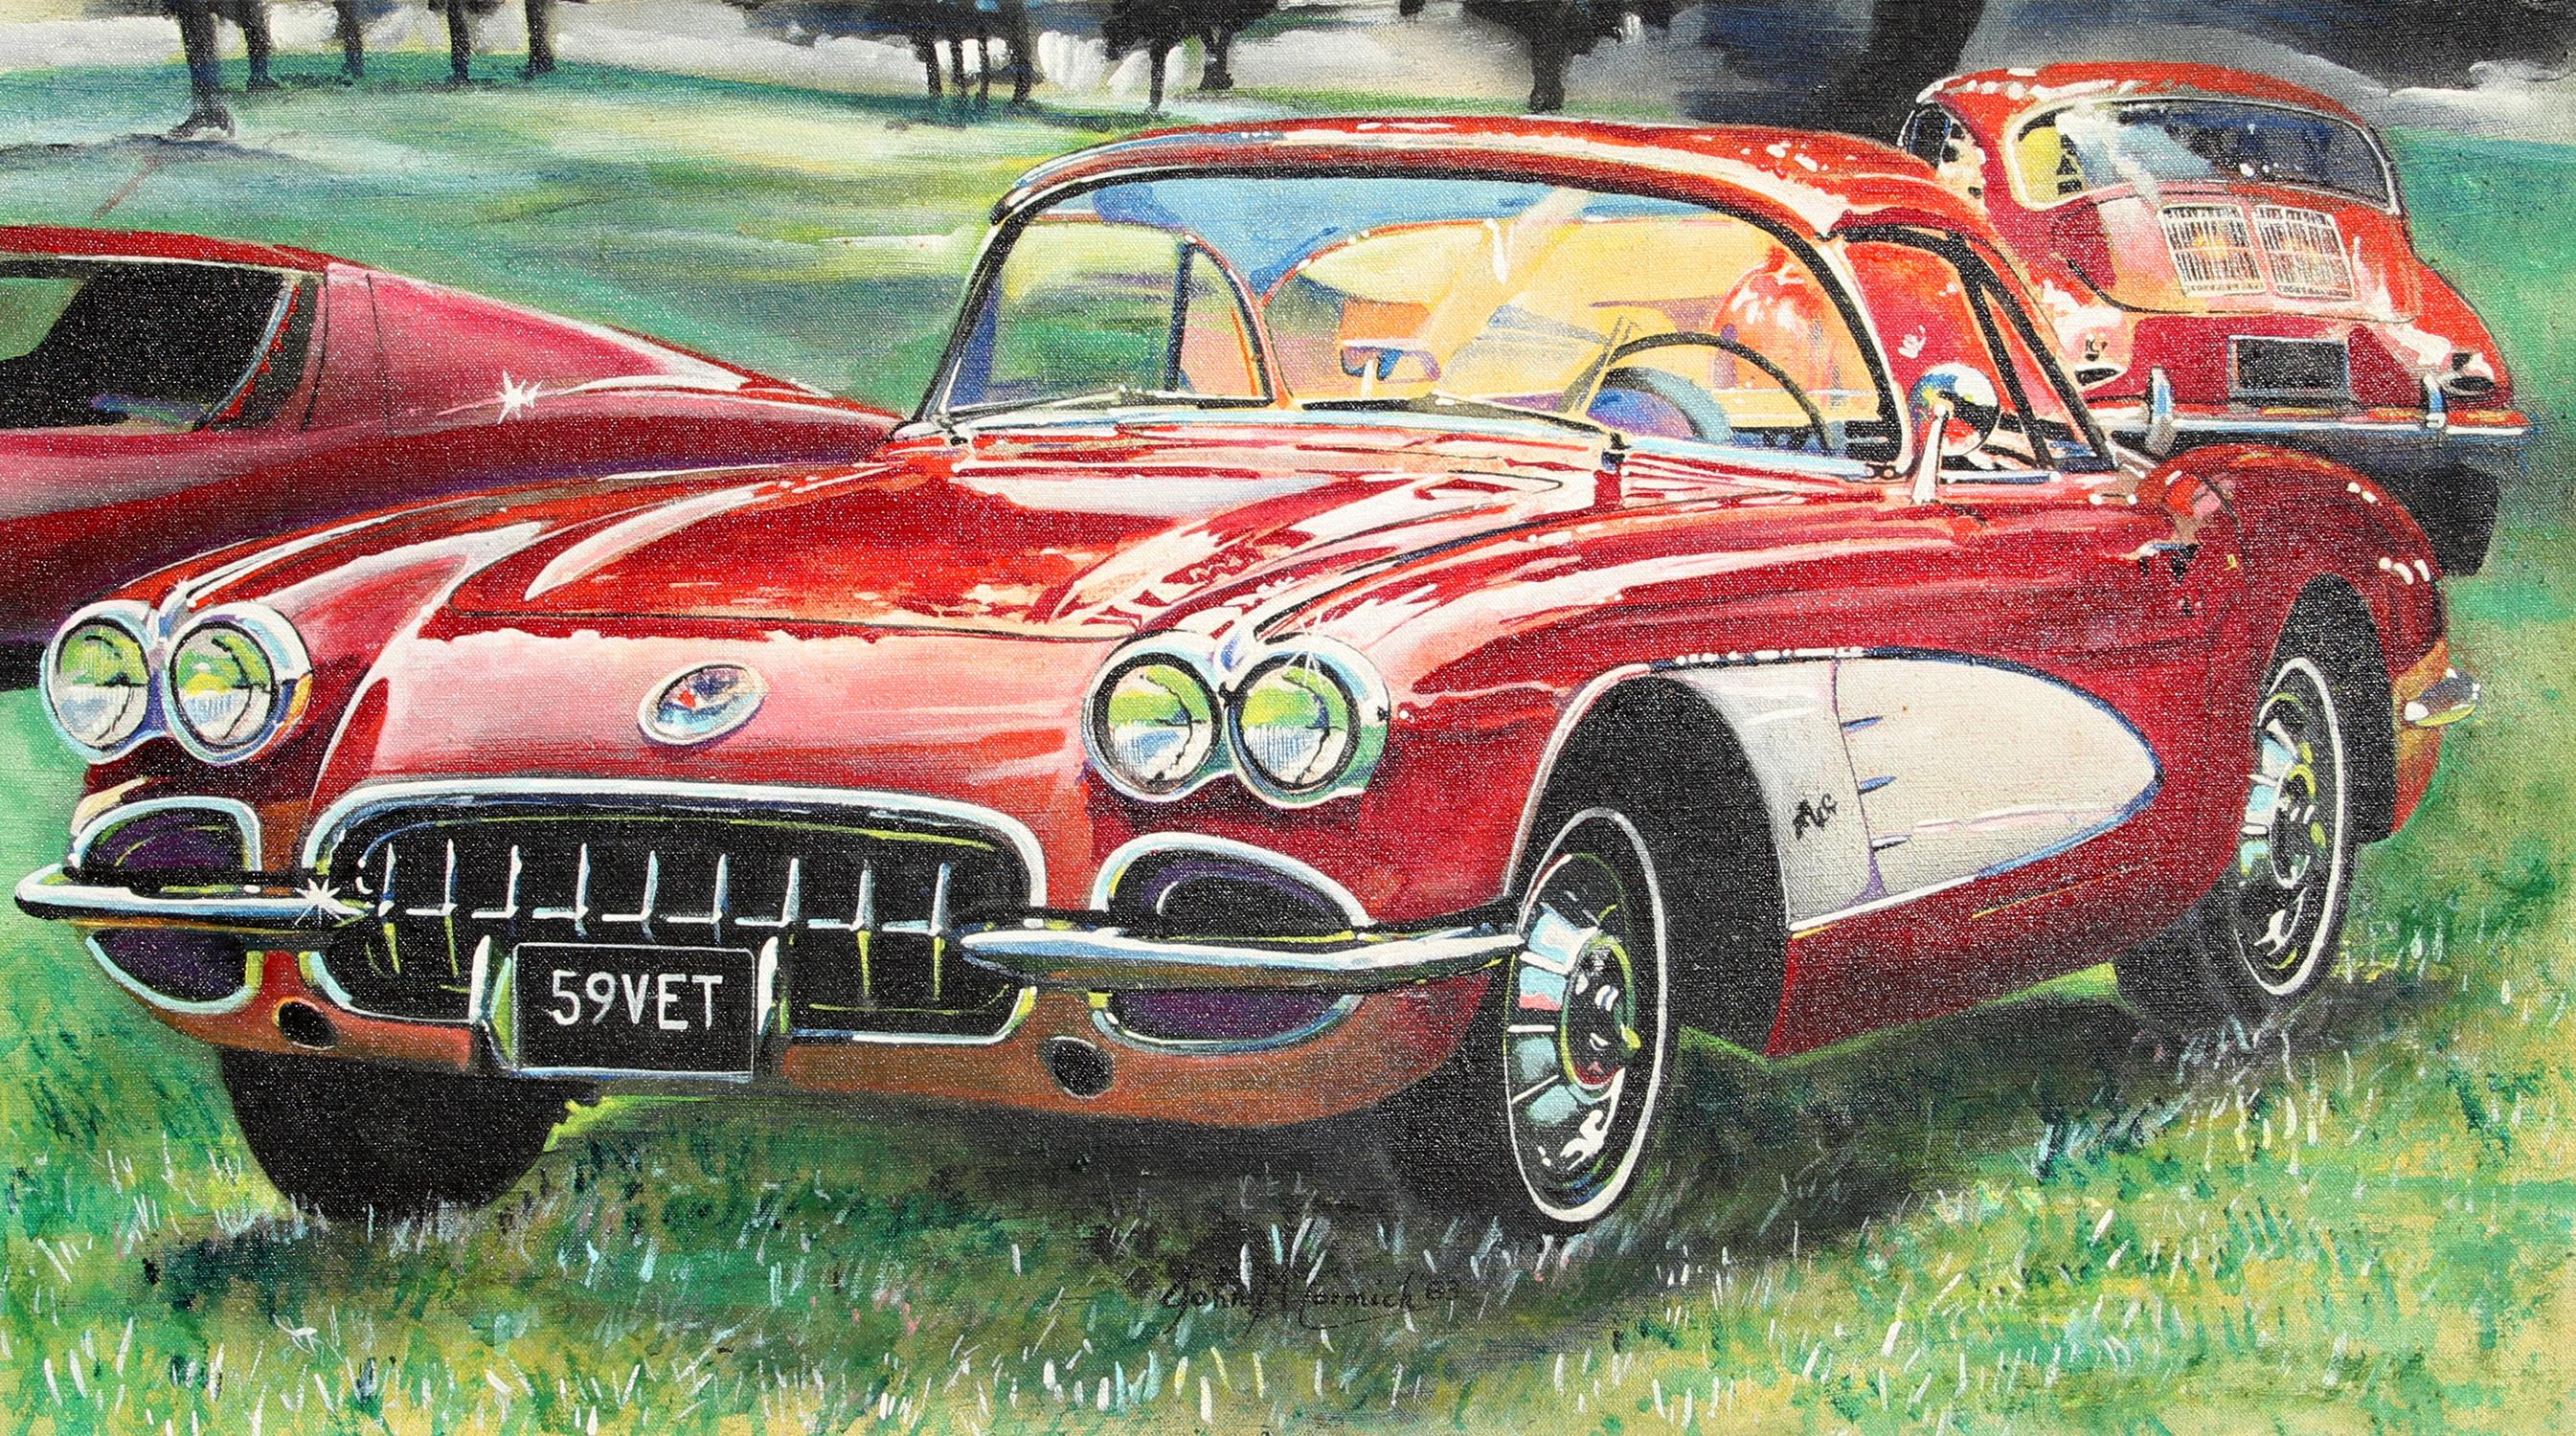 Artiste : John McCormick, américain
Titre : Corvette 1959
Année : 1983
Moyen : Huile sur toile, signée
Taille : 18 in. x 32 in. (45,72 cm x 81,28 cm)